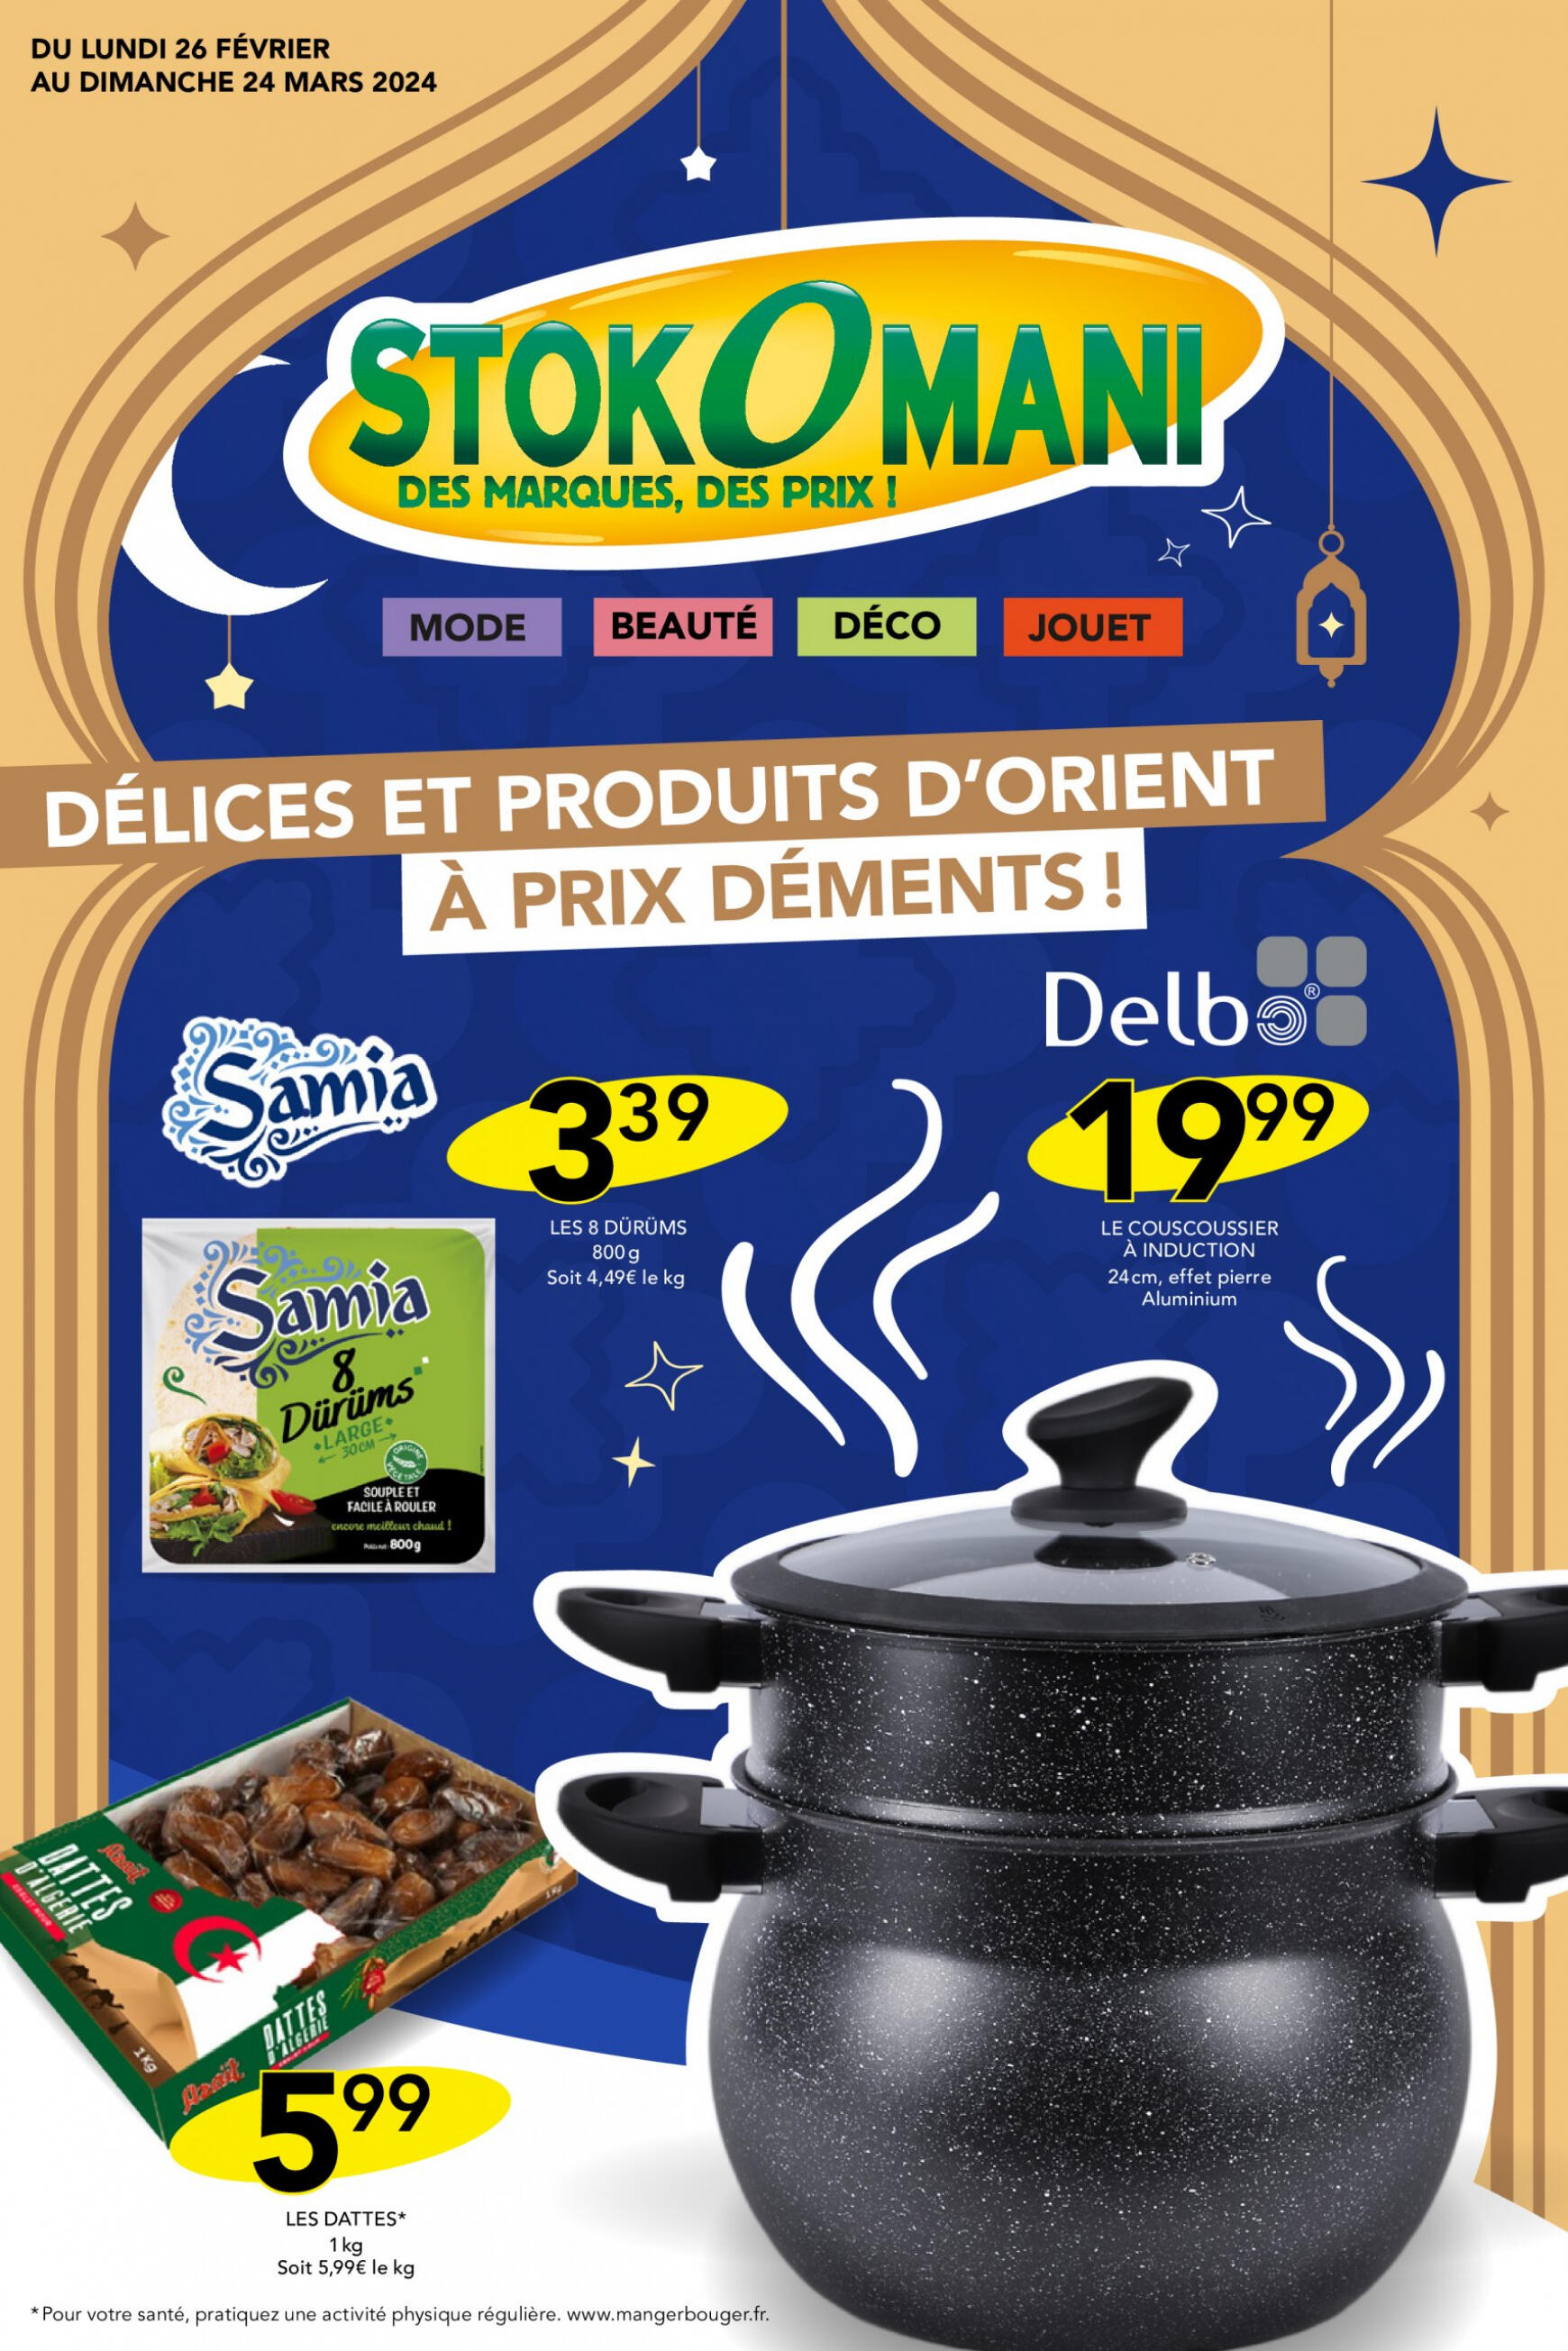 stokomani - Stokomani - PRODUITS D'ORIENT valable à partir de 26.02.2024 - page: 1